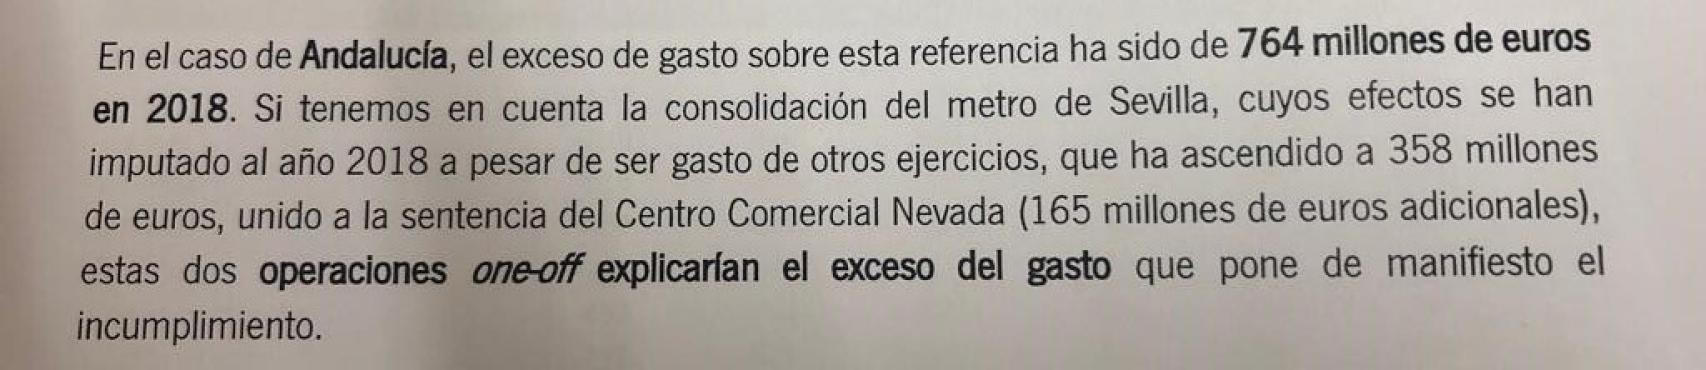 Informe interno de la Junta de Andalucía sobre gastos sobrevenidos al ejercicio 2018.